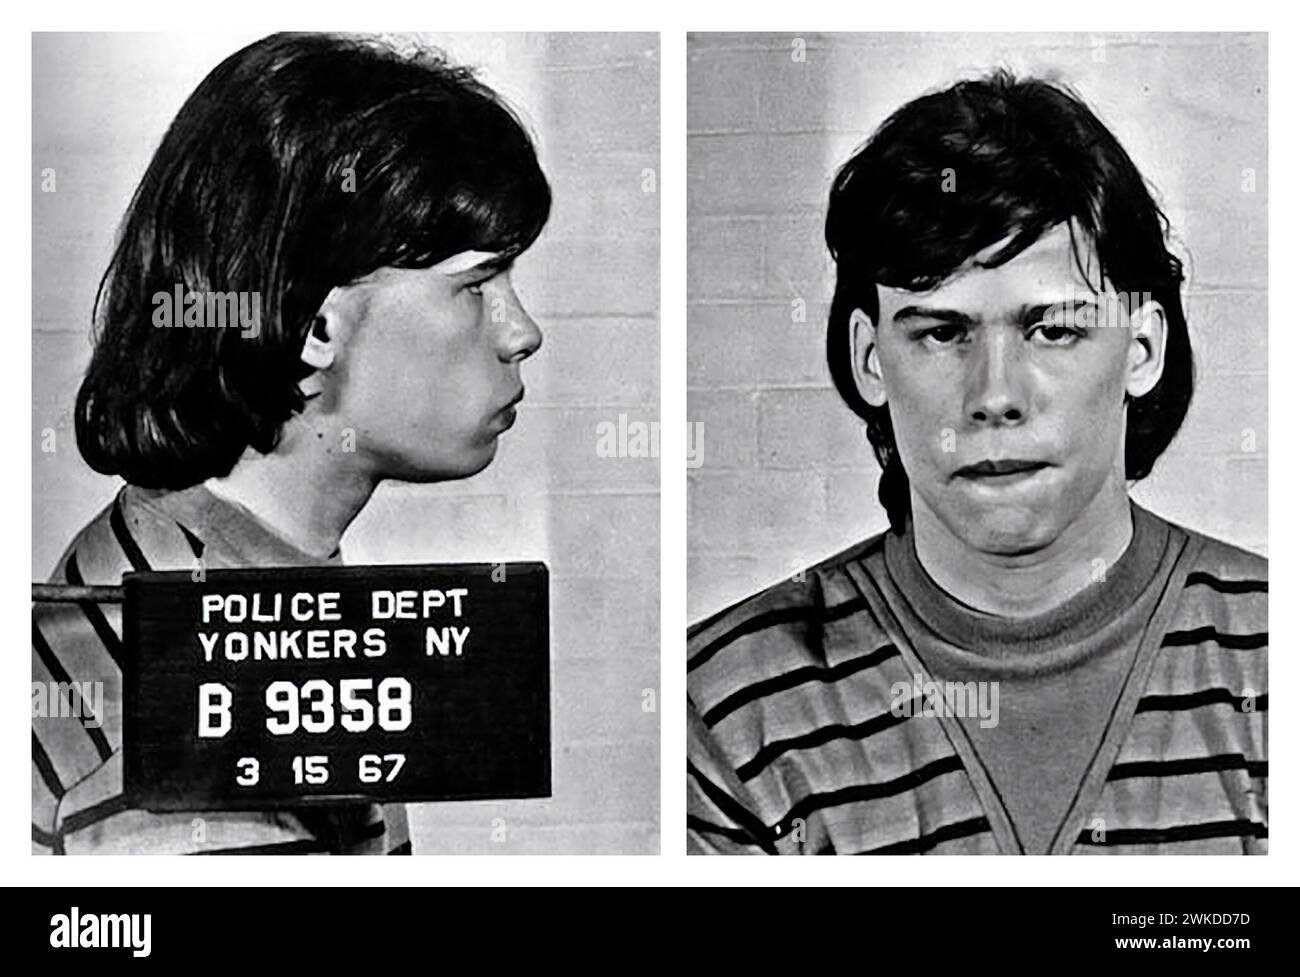 Steven Tyler (Aerosmith) coup de feu, arrêté pour possession de pot, 1967 Banque D'Images